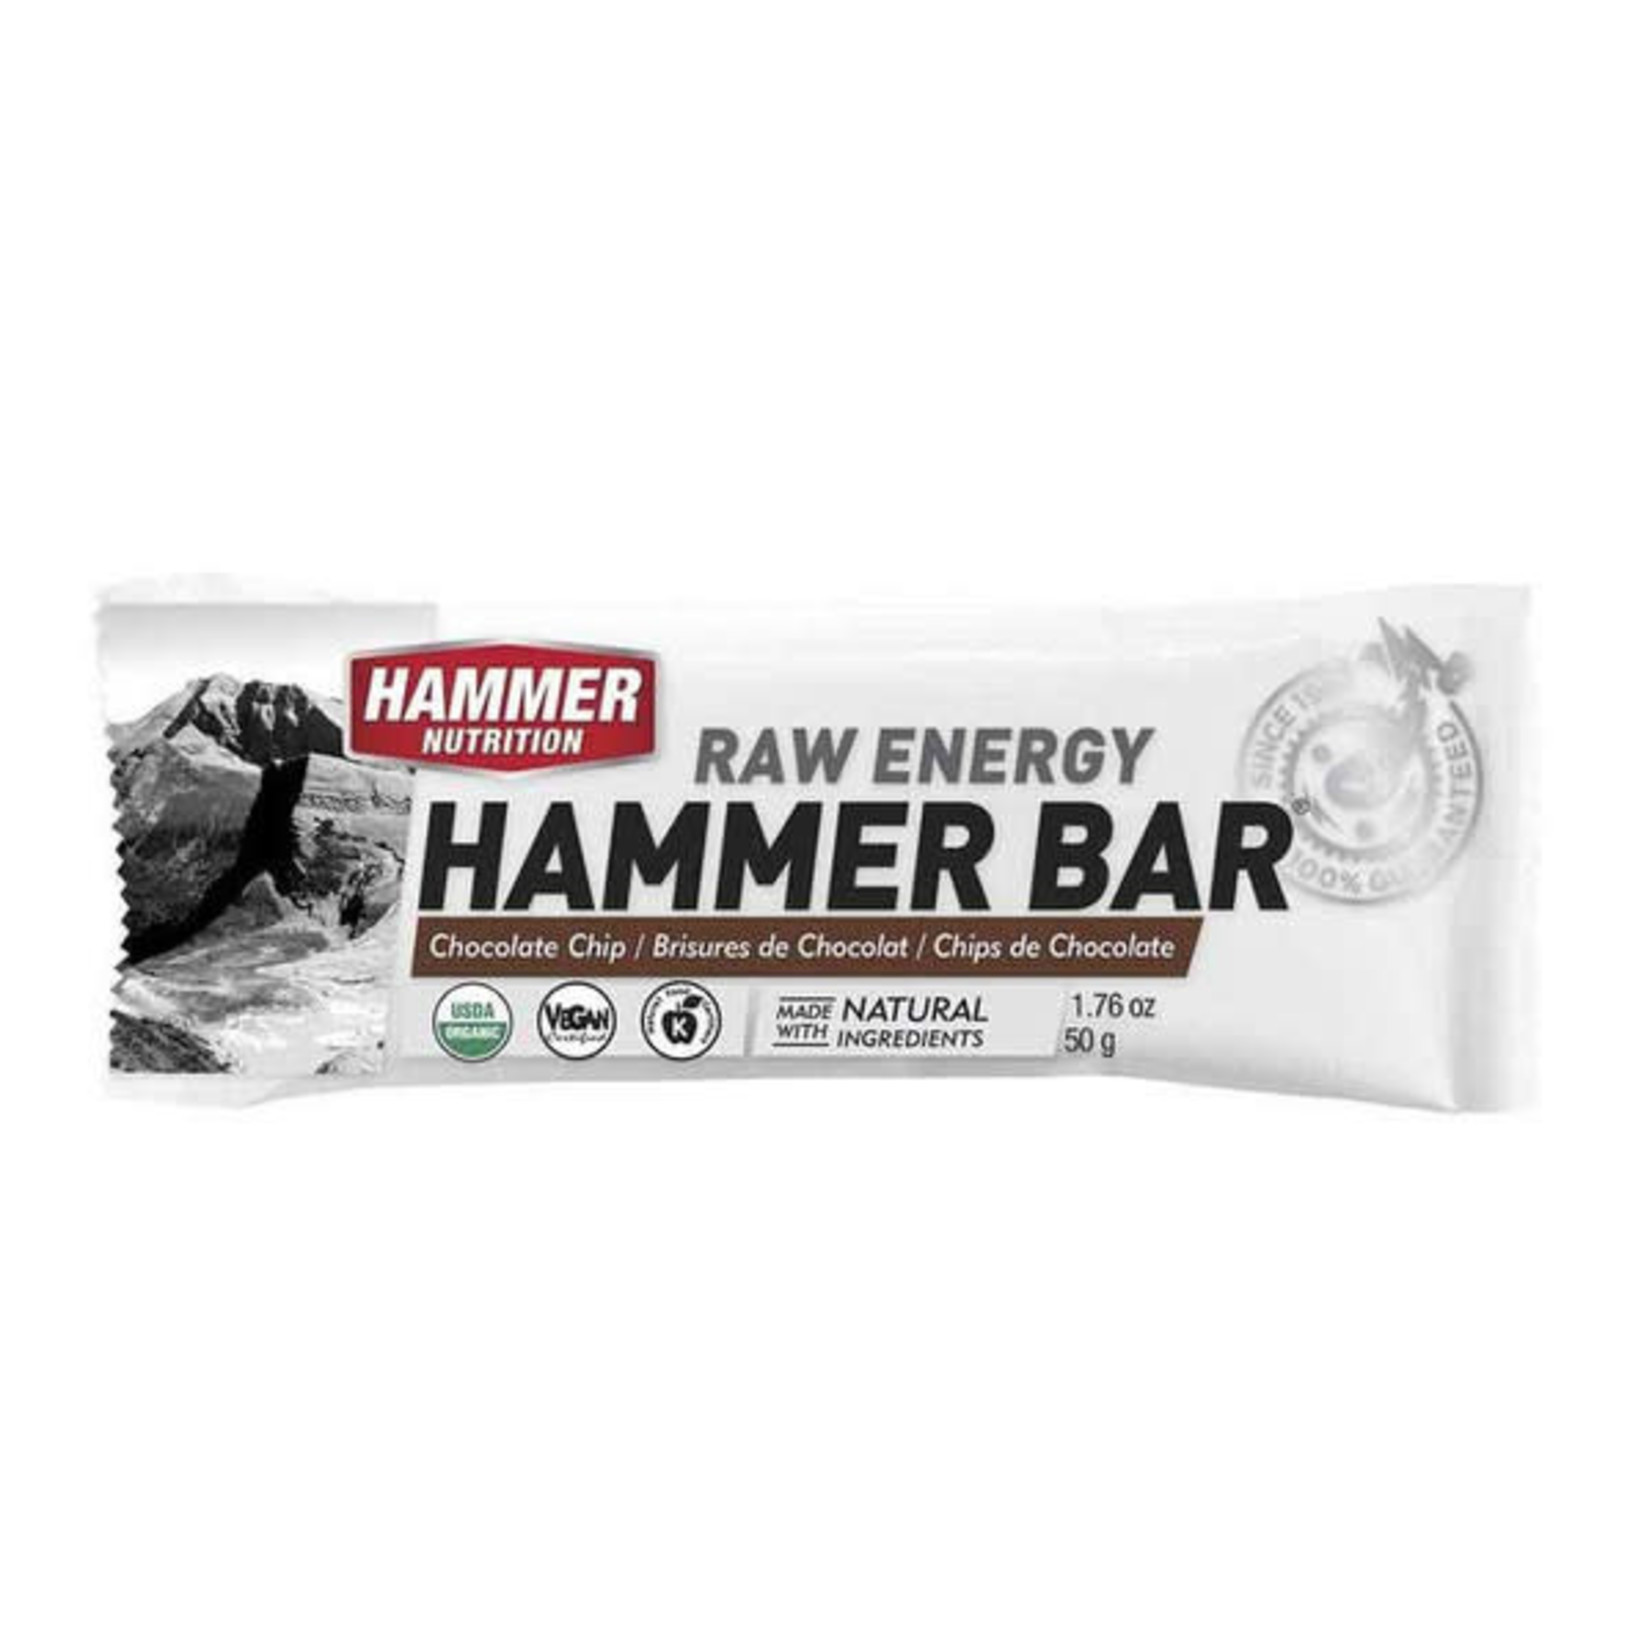 Hammer Nutrition Hammer Bar 1.76oz